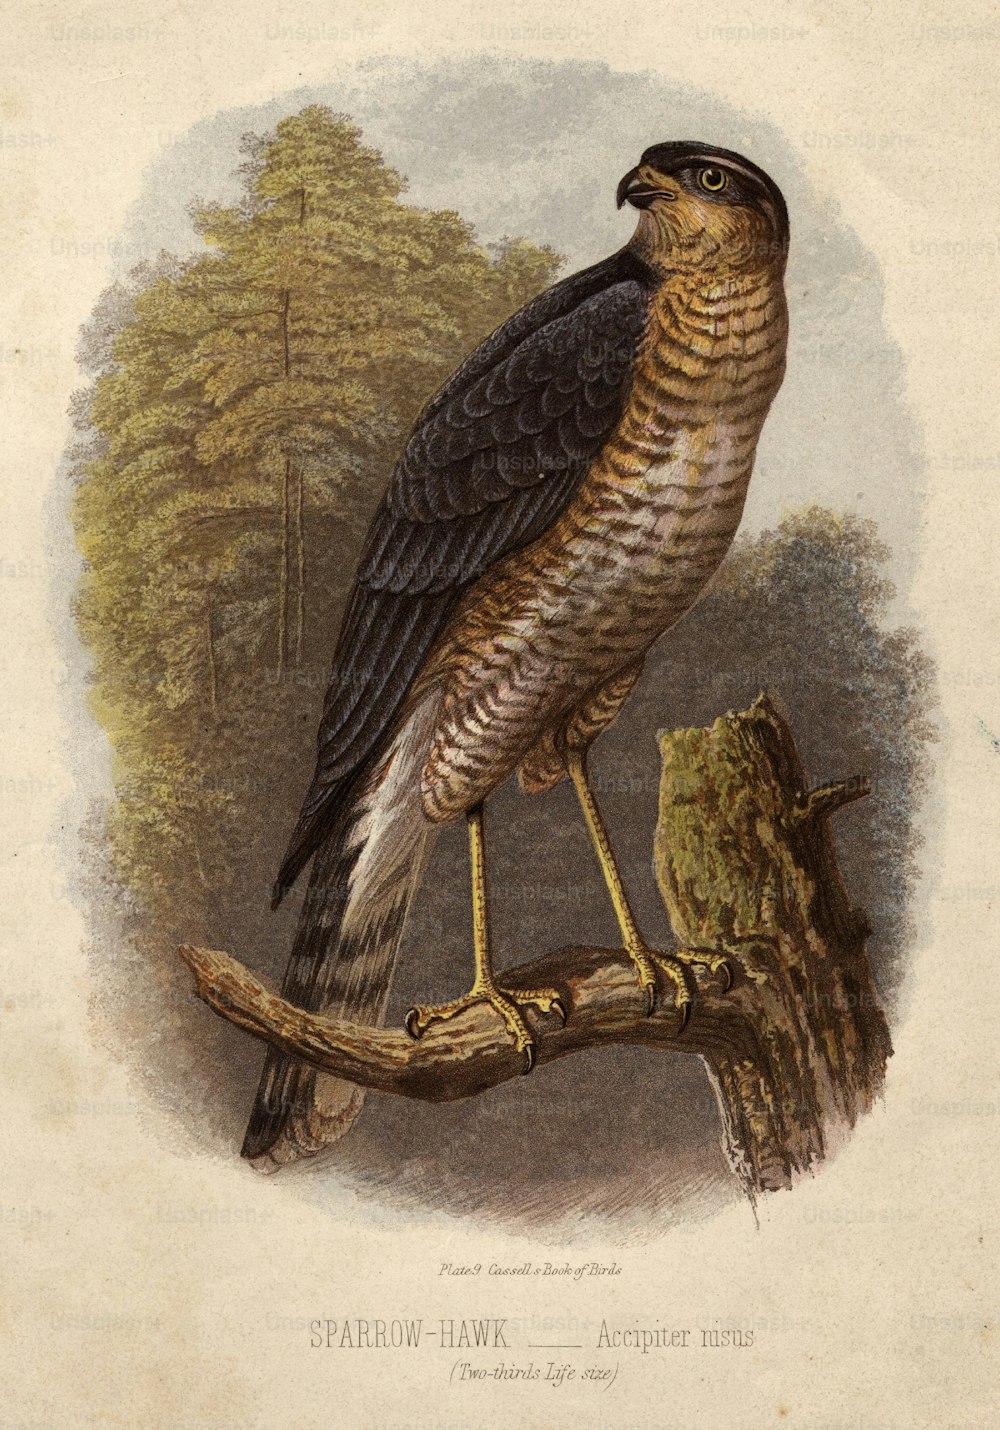 vers 1900 : Accipiter nisus, l’épervier.  Le livre des oiseaux de Cassel (Photo de Hulton Archive/Getty Images)